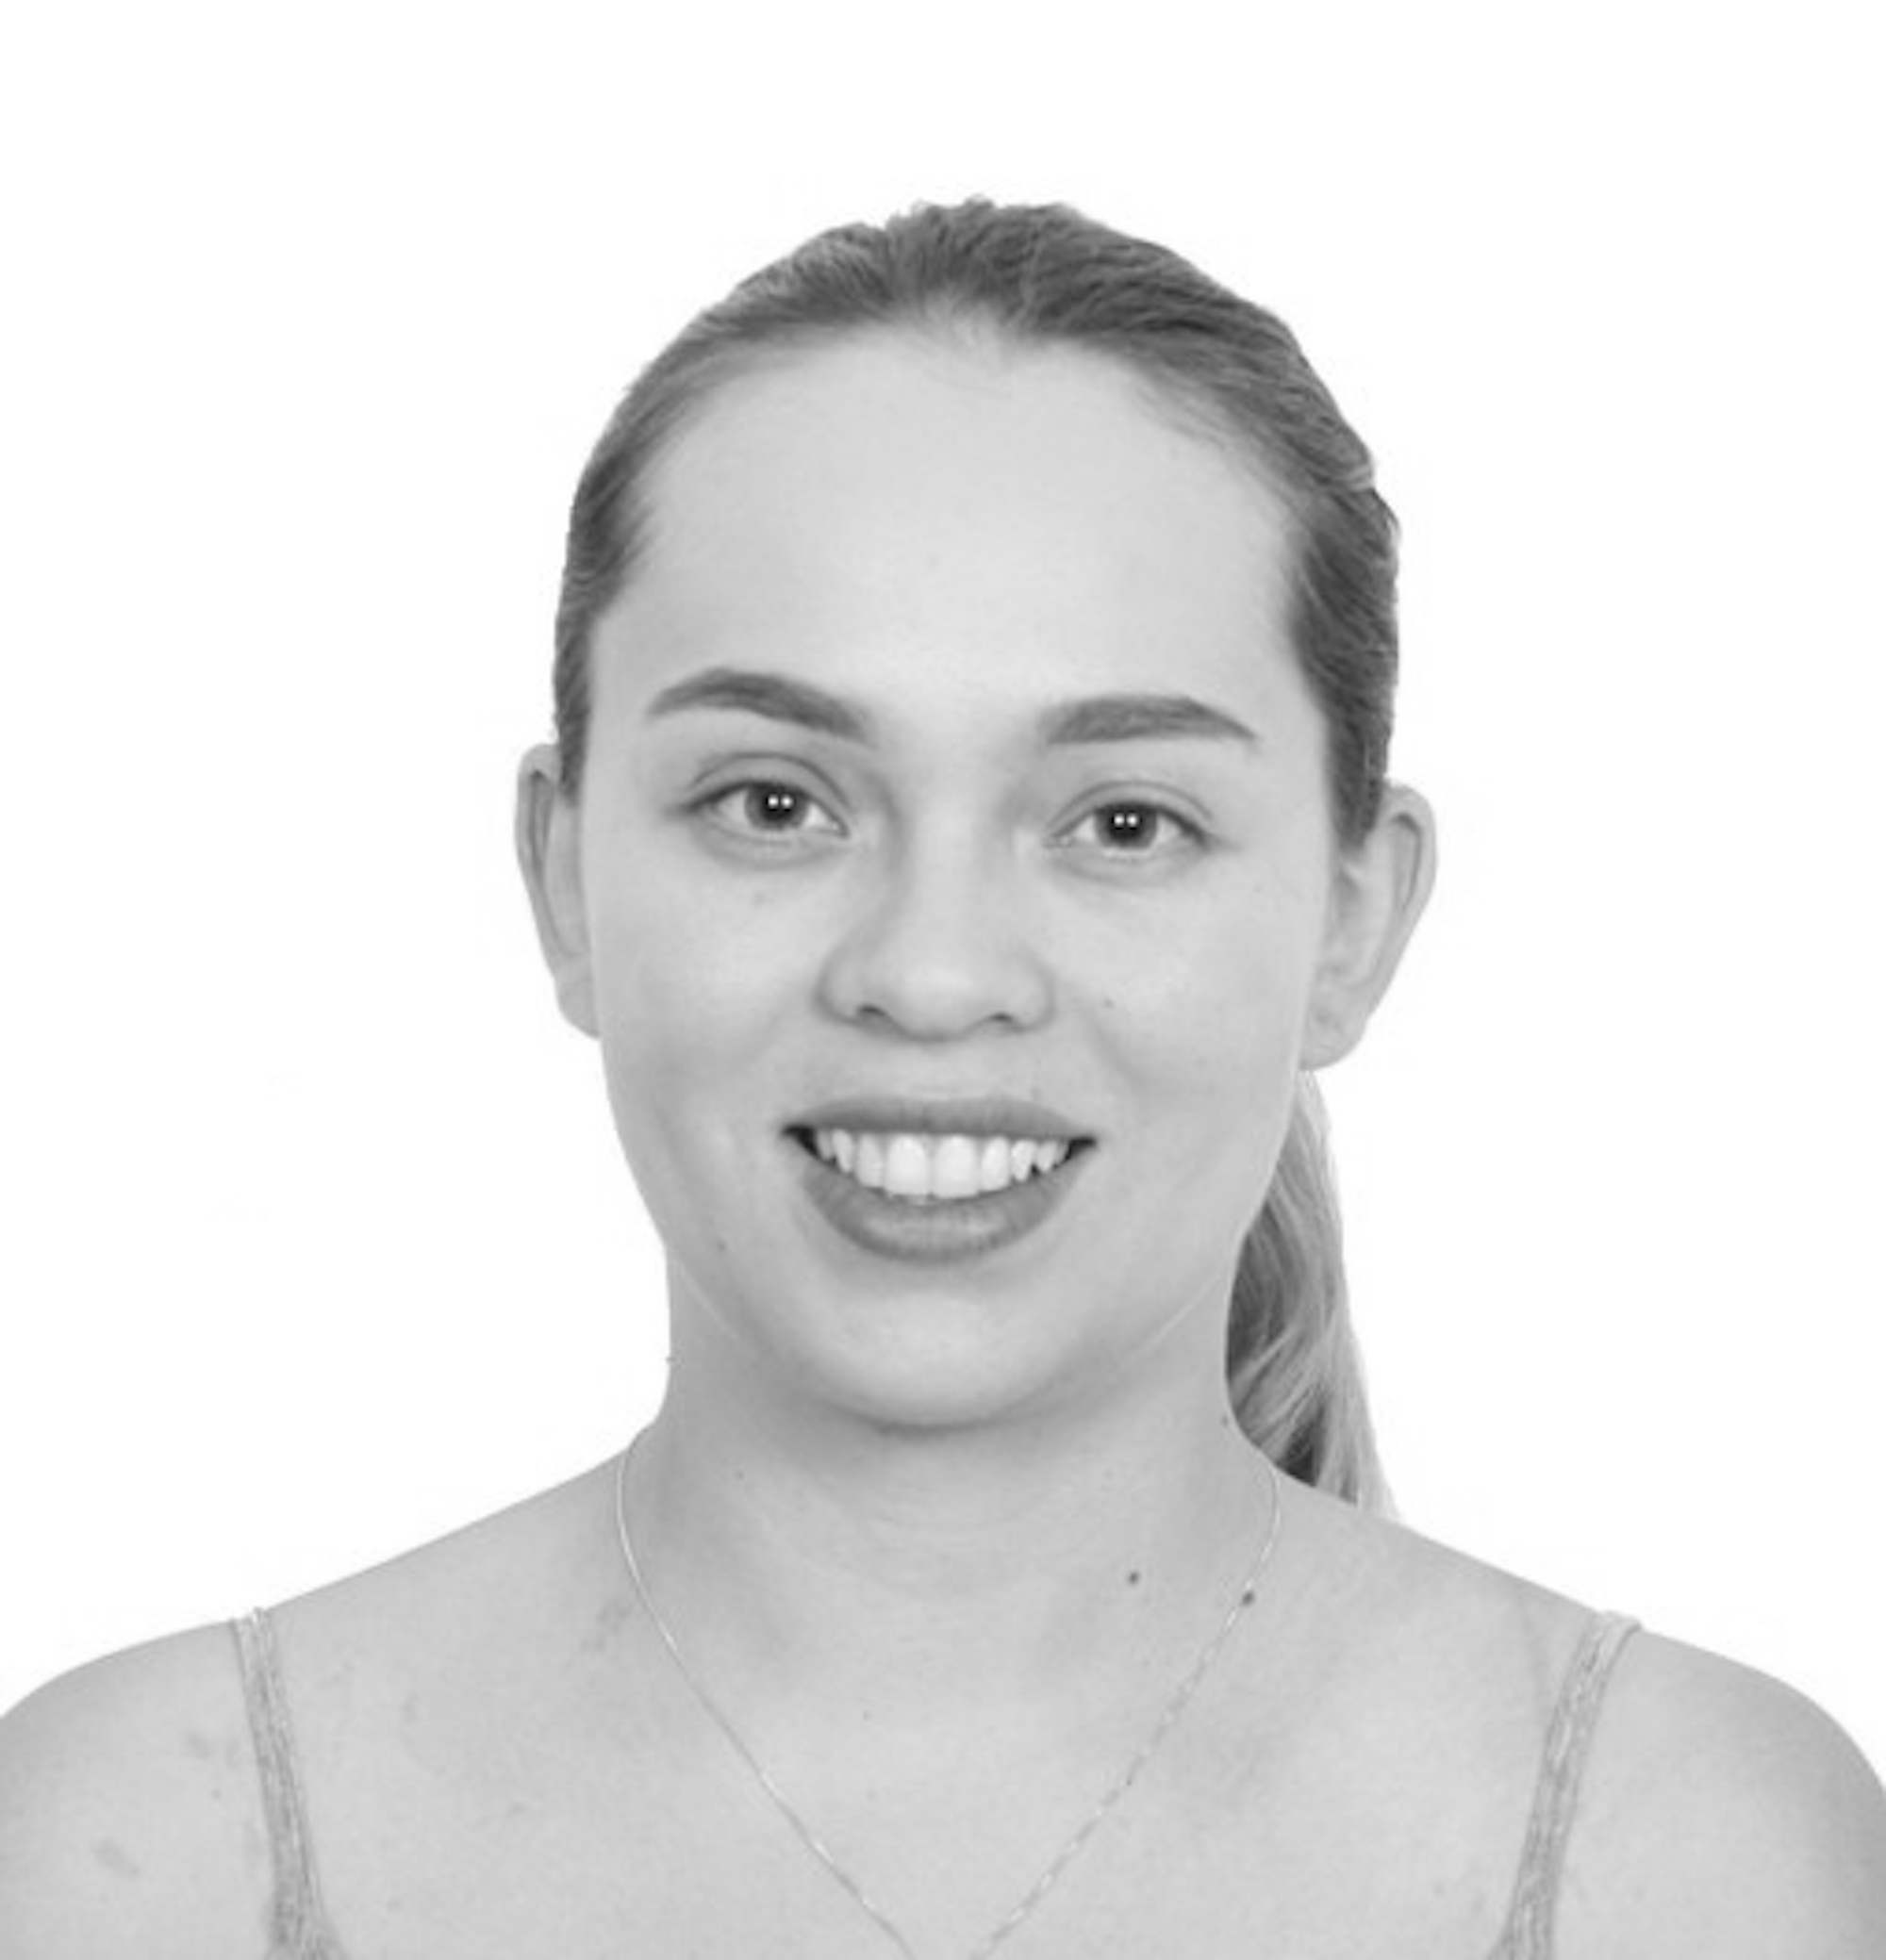 *Gabriela Oviedo Perhavec es abogada por la Universidad San Francisco de Quito, con una subespecialización en derechos humanos. Realizó sus estudios de maestría en la Escuela de Derecho de la Universidad de Michigan, donde fue seleccionada como Grotius Fellow (2019-2020). Actualmente se desempeña trabaja como abogada en Cejil.